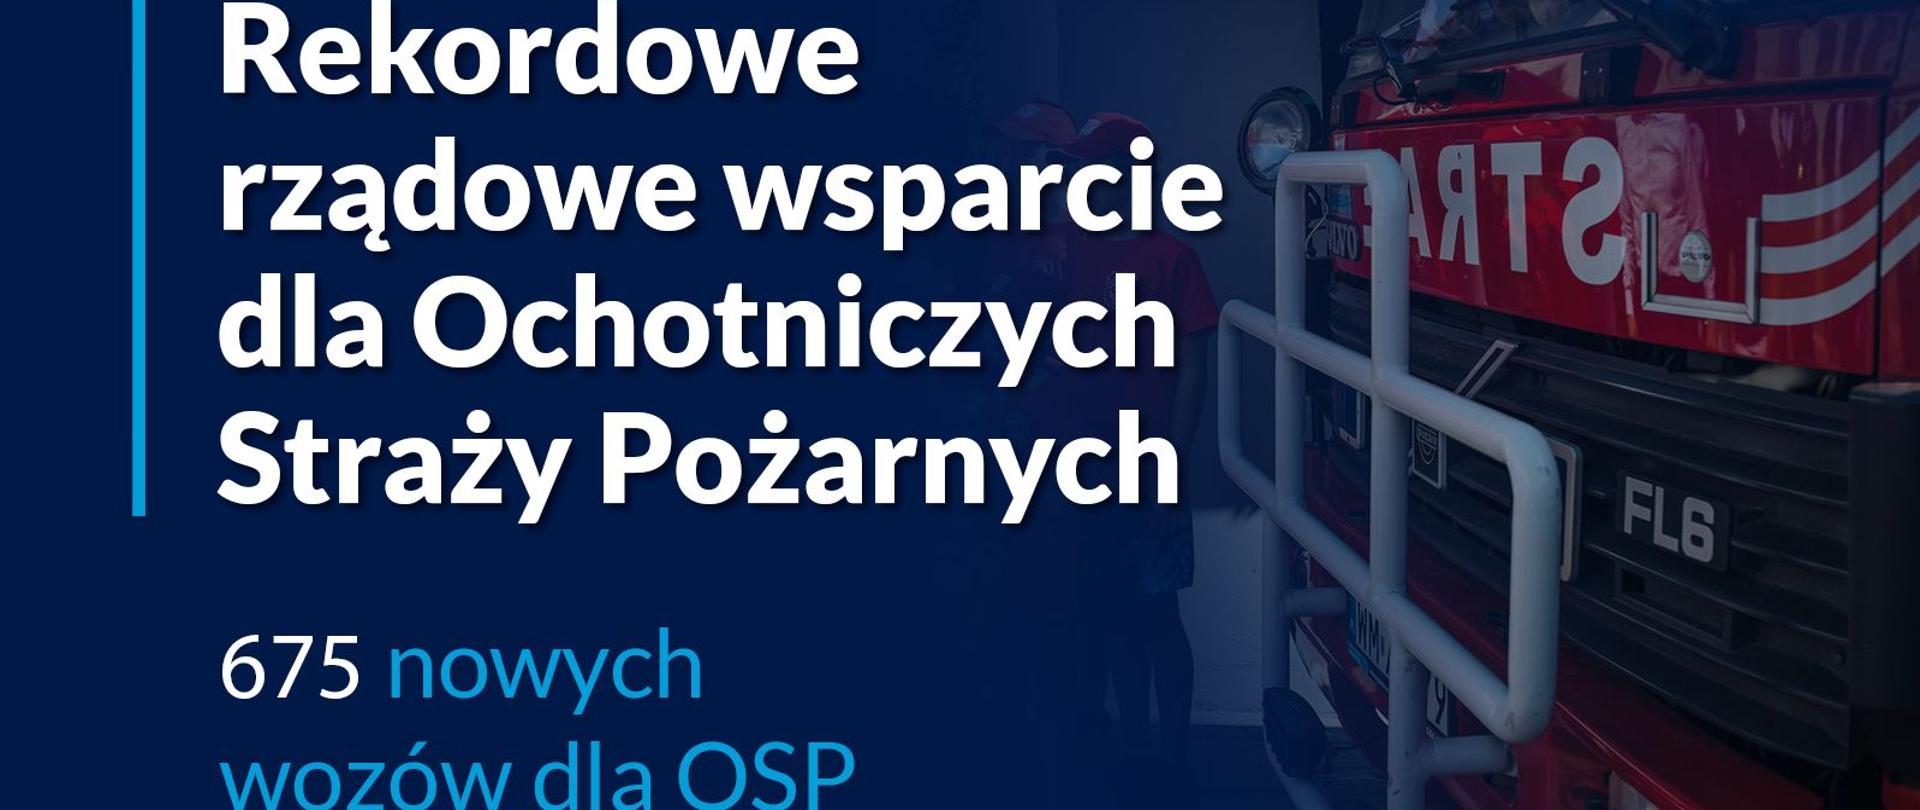 plakat Kancelarii Prezesa Rady Ministrów o rekordowym wsparciu dla OSP